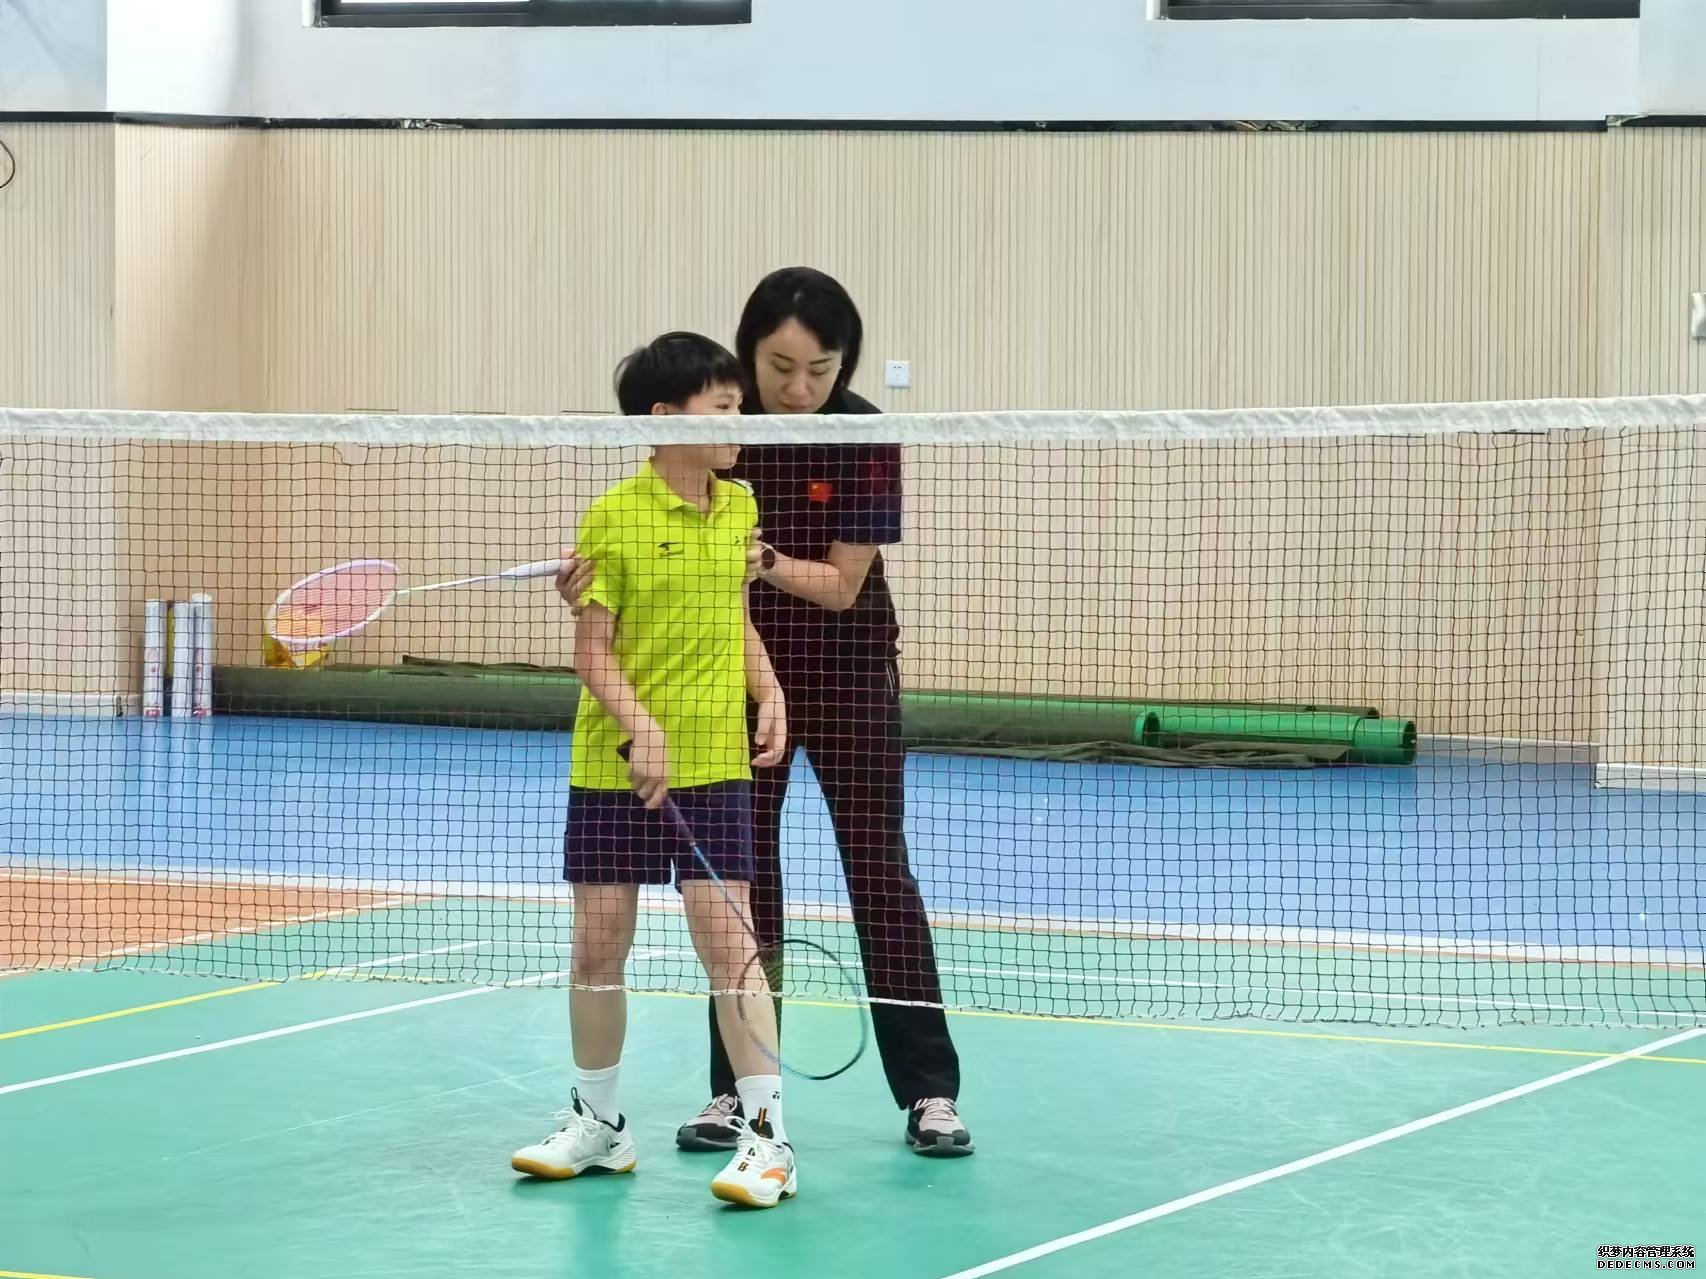 赵芸蕾为学校羽毛球队队员讲解技术动作。人民网记者 杨磊摄